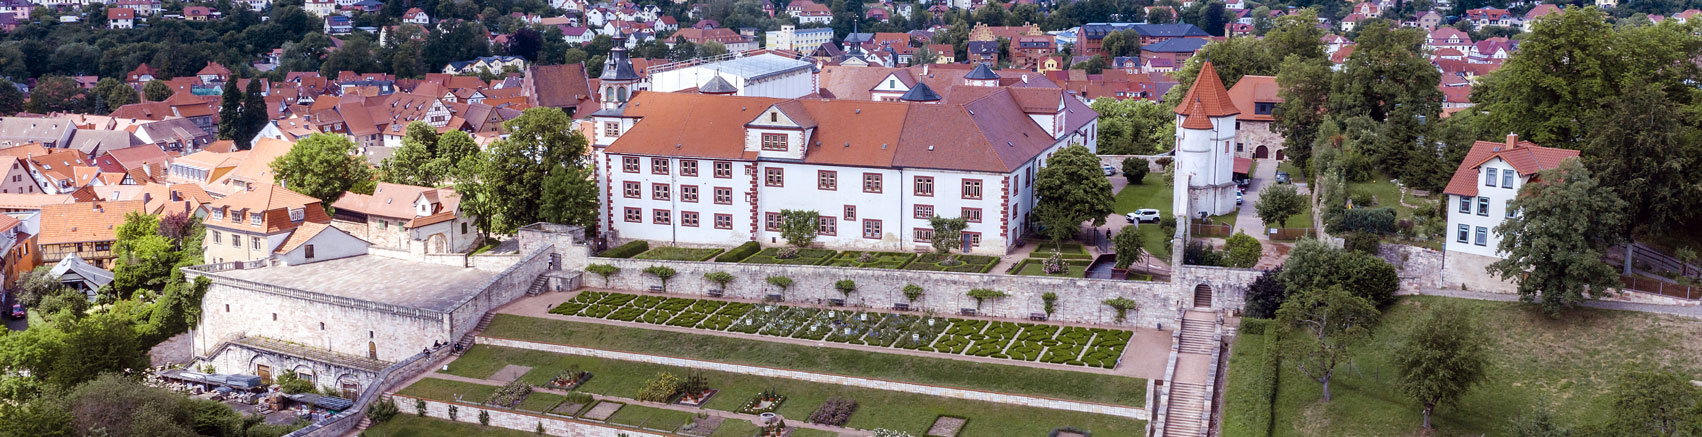 Museum Schloss Wilhelmsburg - Titelbild 01